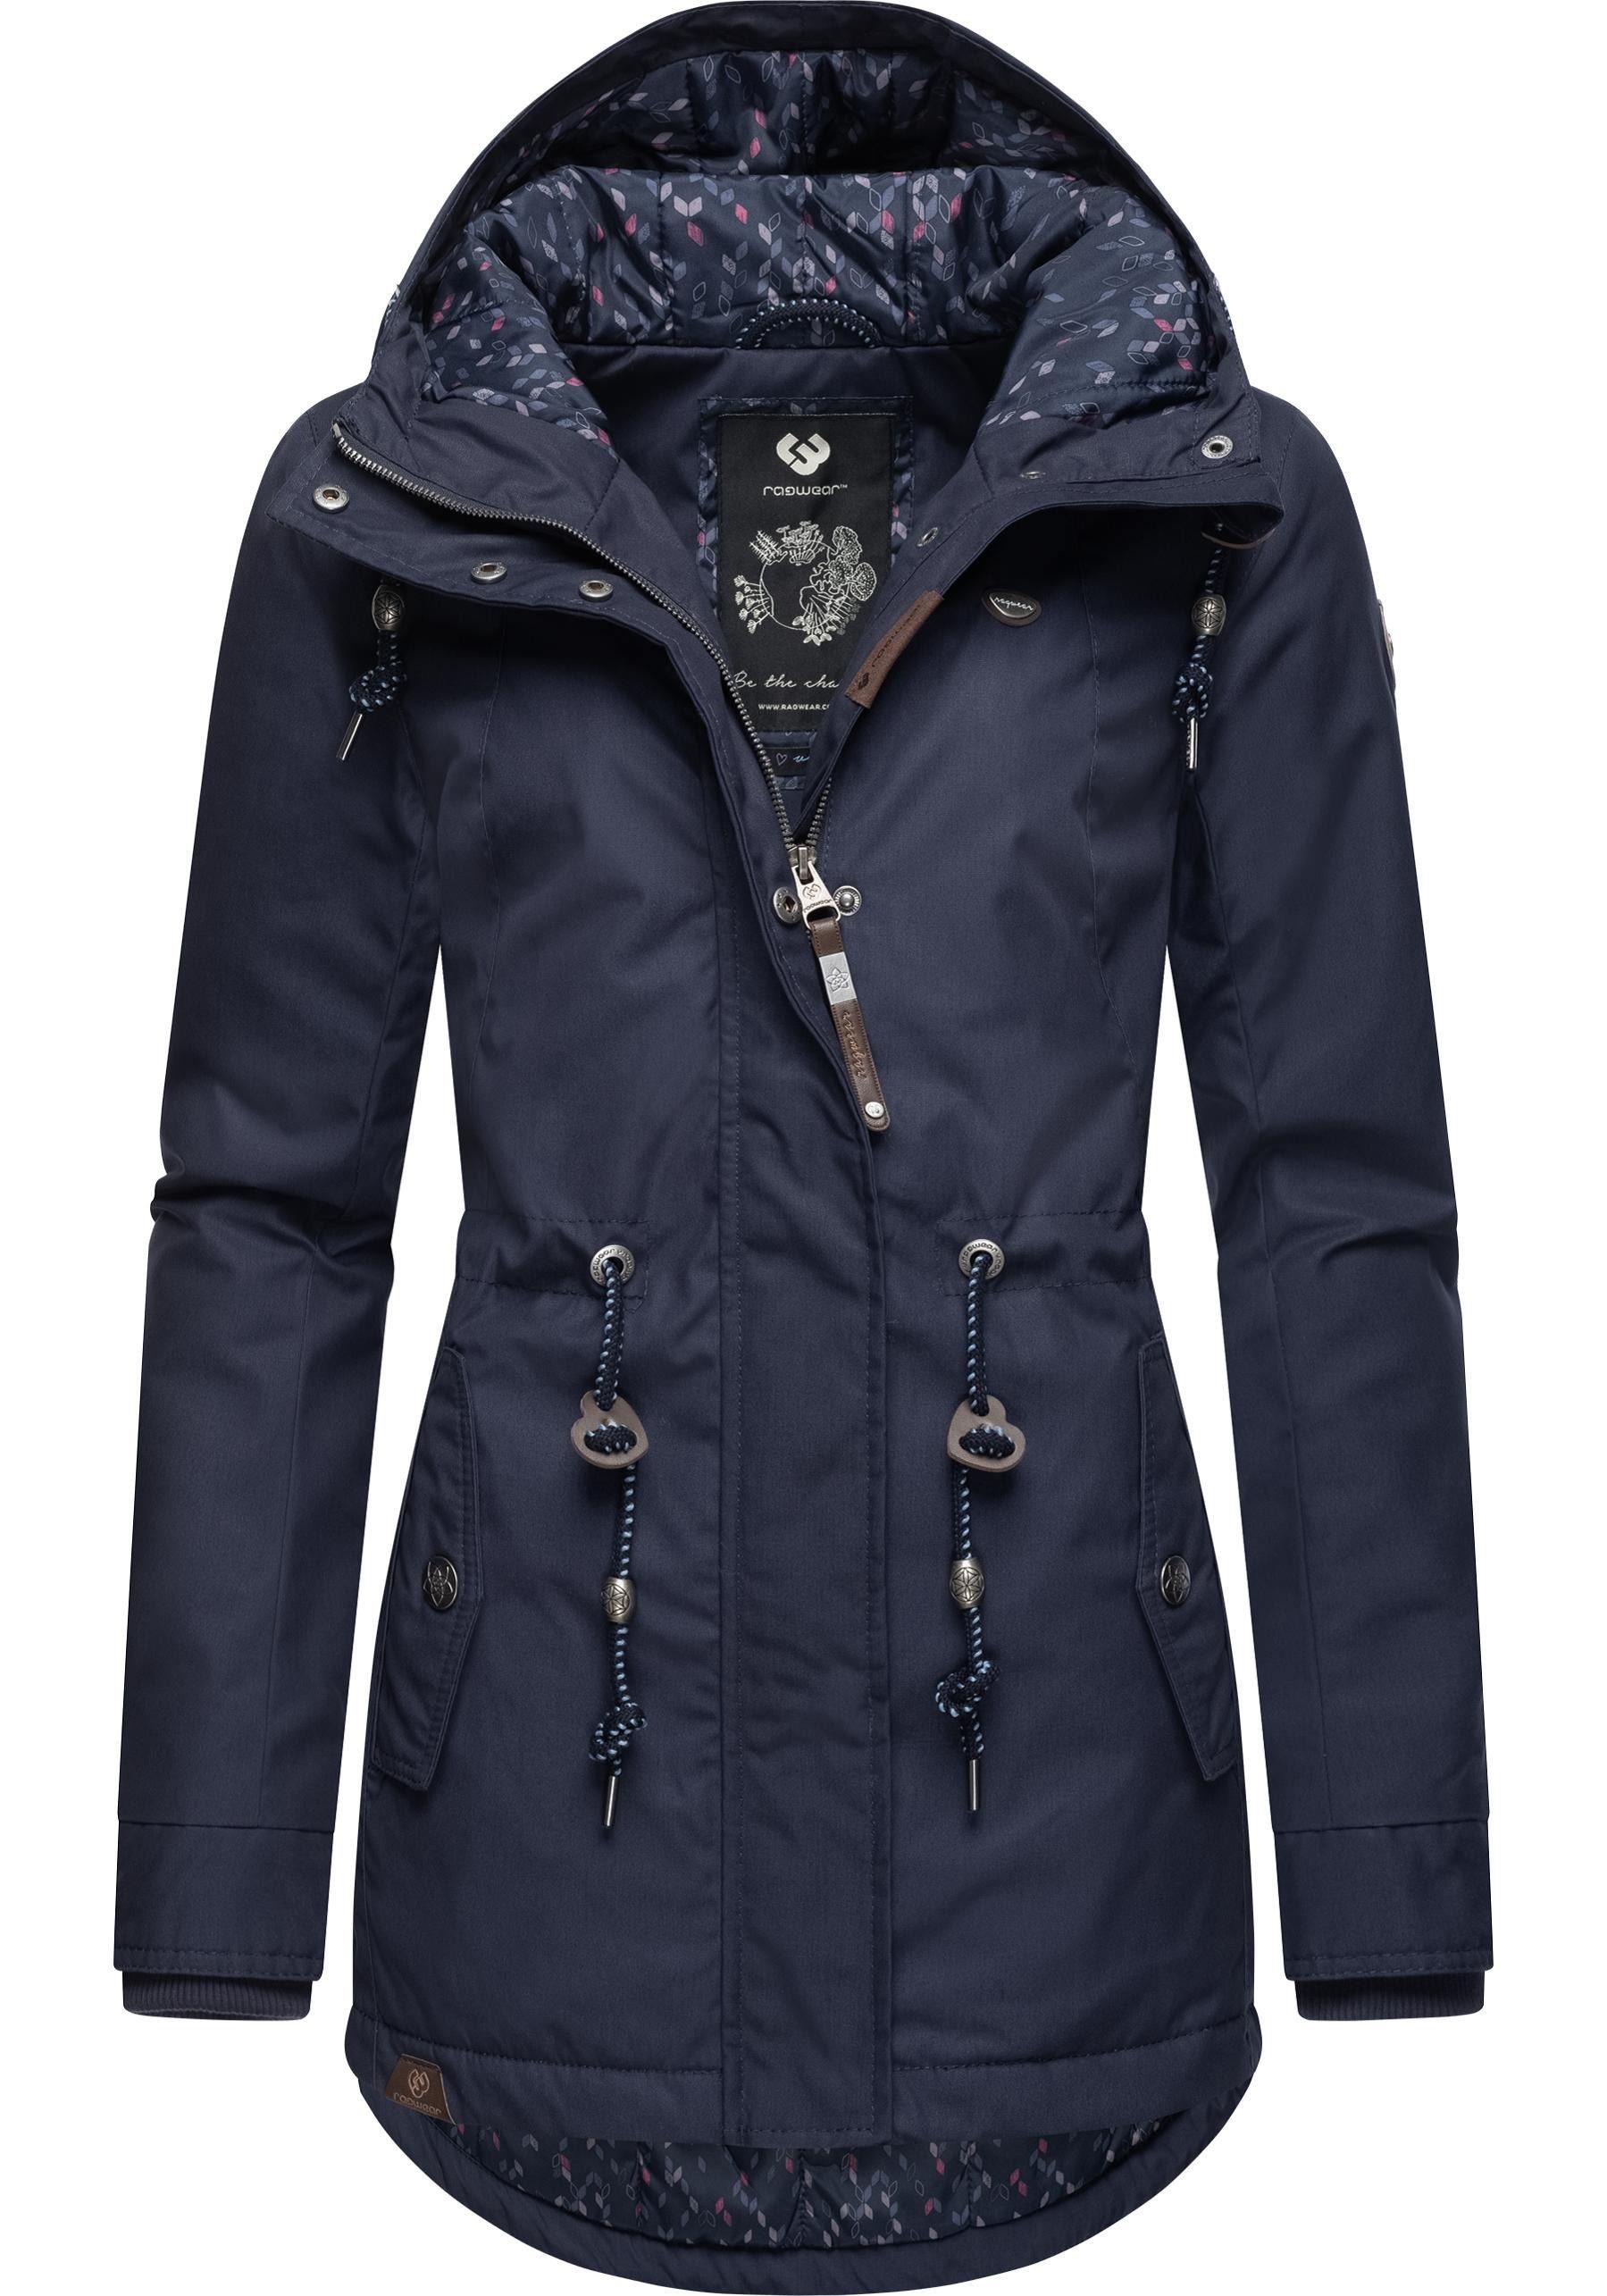 Ragwear Winterjacke Monadis Black Label kalte für Winterparka Jahreszeit die graublau stylischer